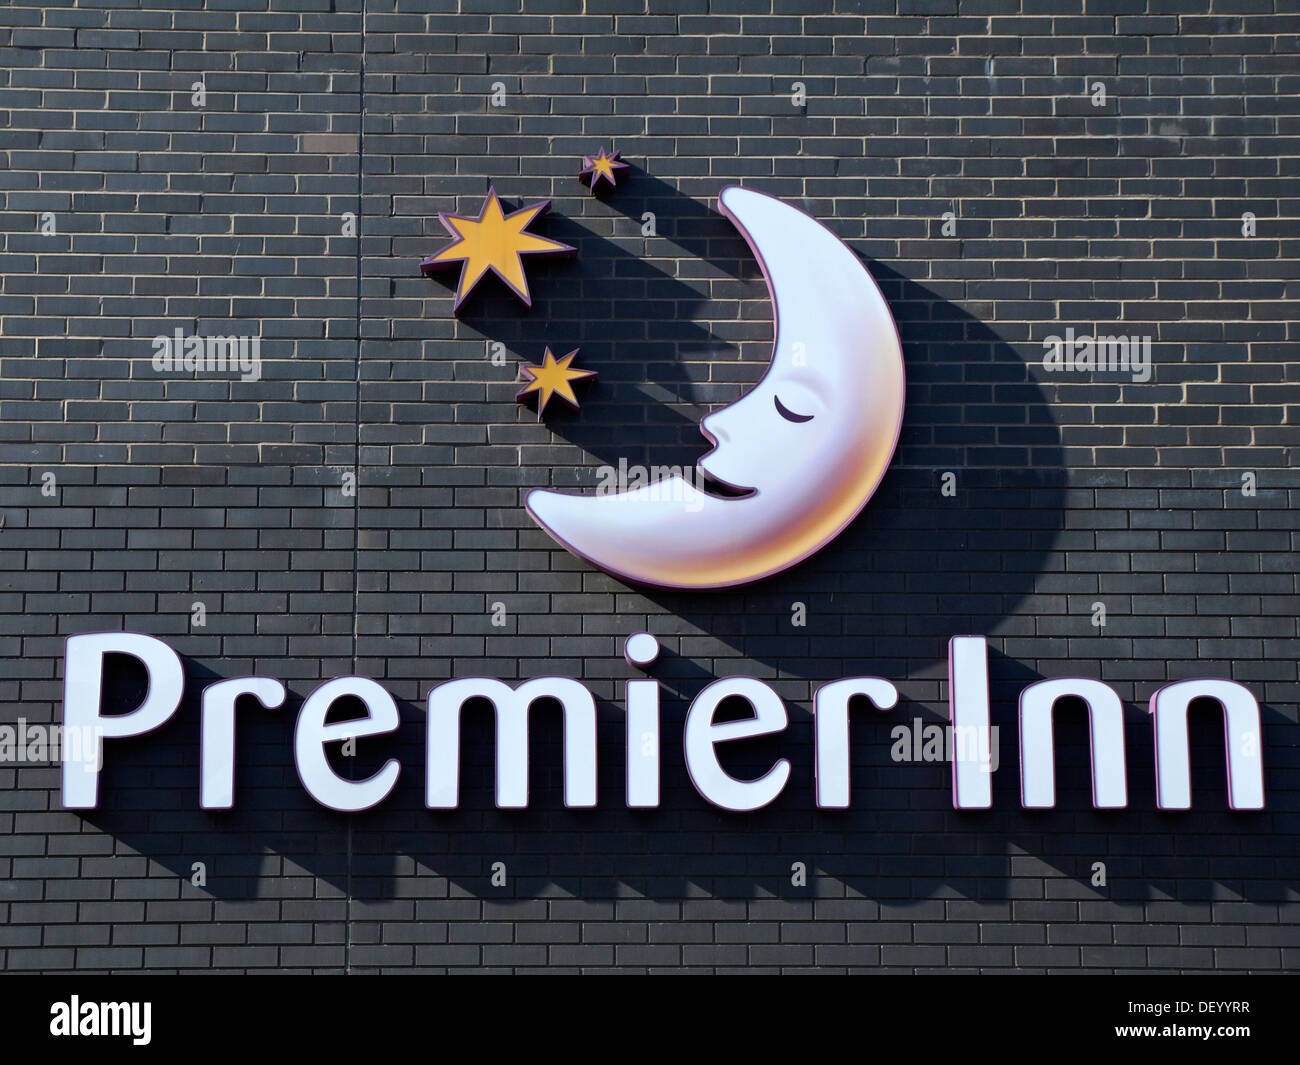 Premier Inn hotel sign on outside wall UK Stock Photo